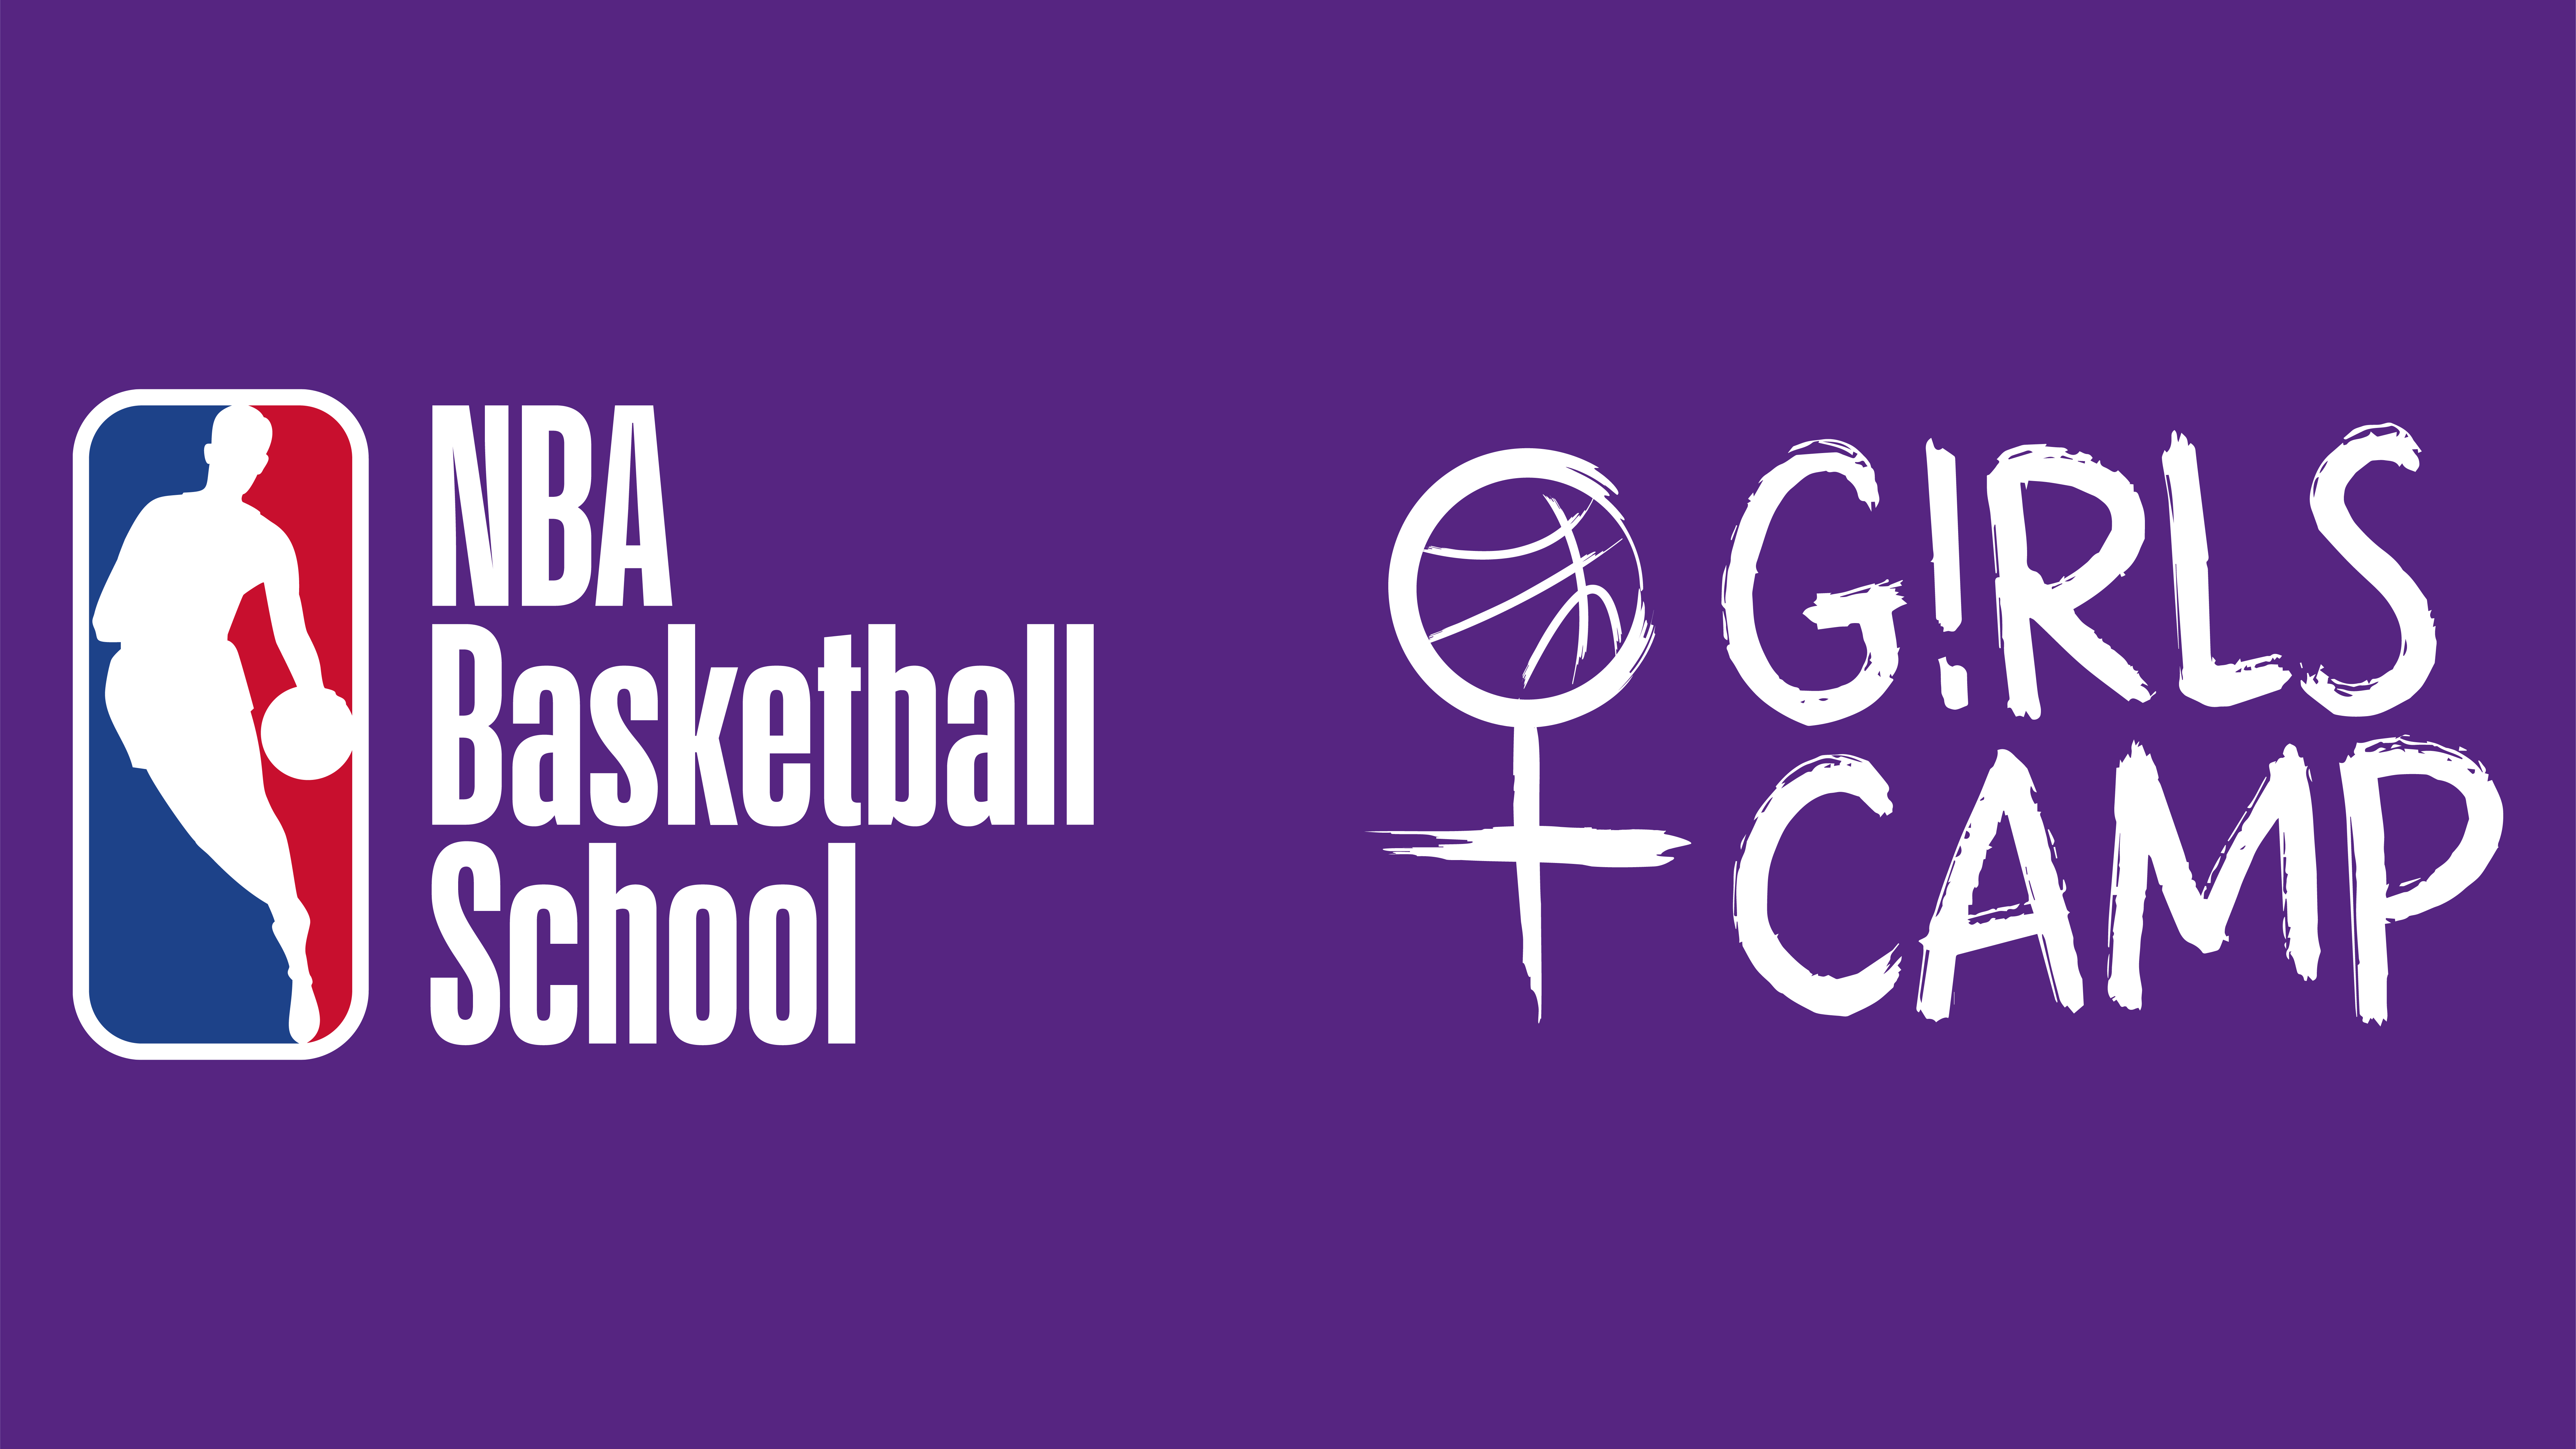 Aviso de Pauta / Credenciamento de Imprensa - G!rls Camp / NBA Basketball School